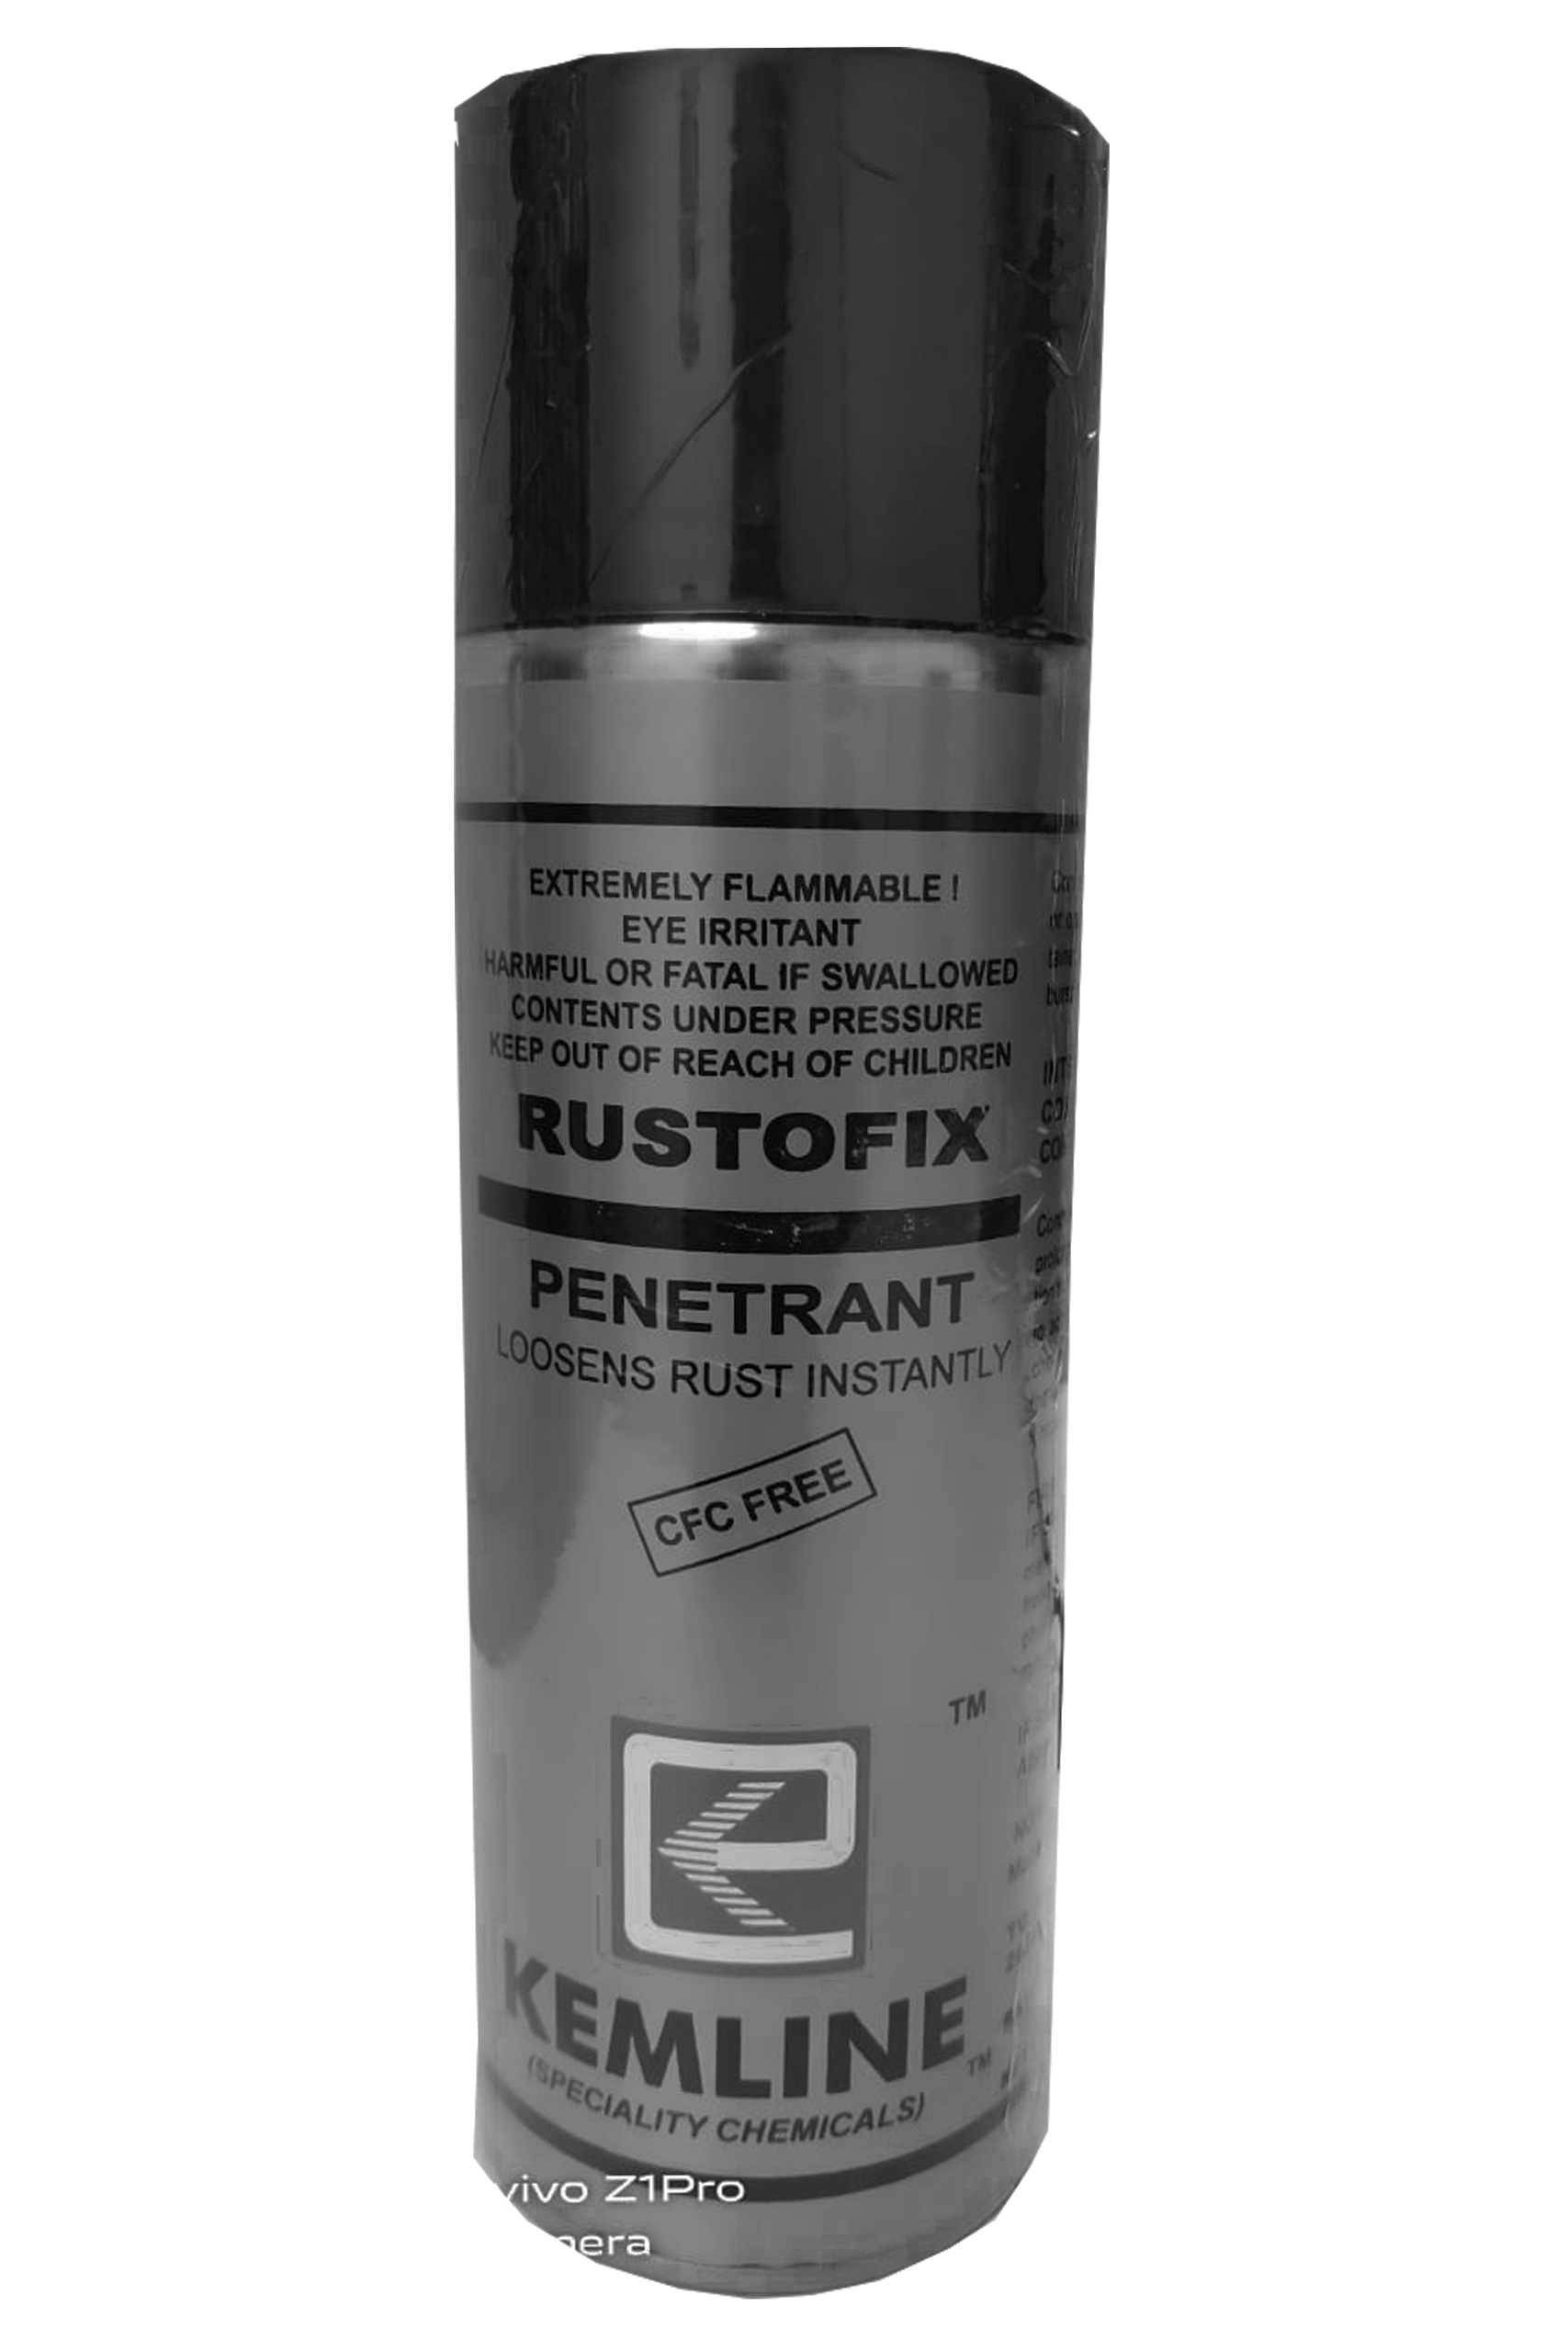 Rustofix Rust Preventive Chemical